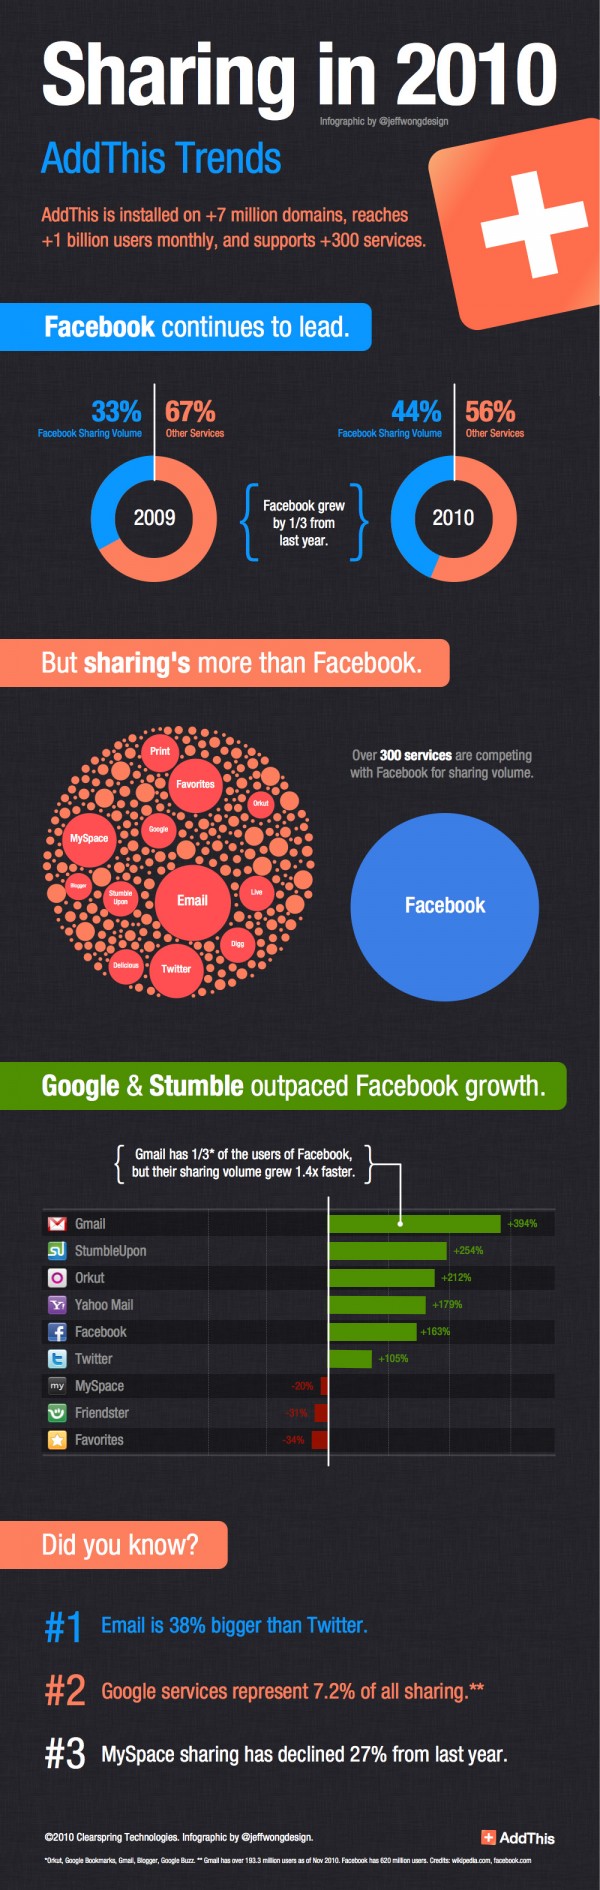 Facebook використовується у 44% випадків для поширення інформації серед друзів